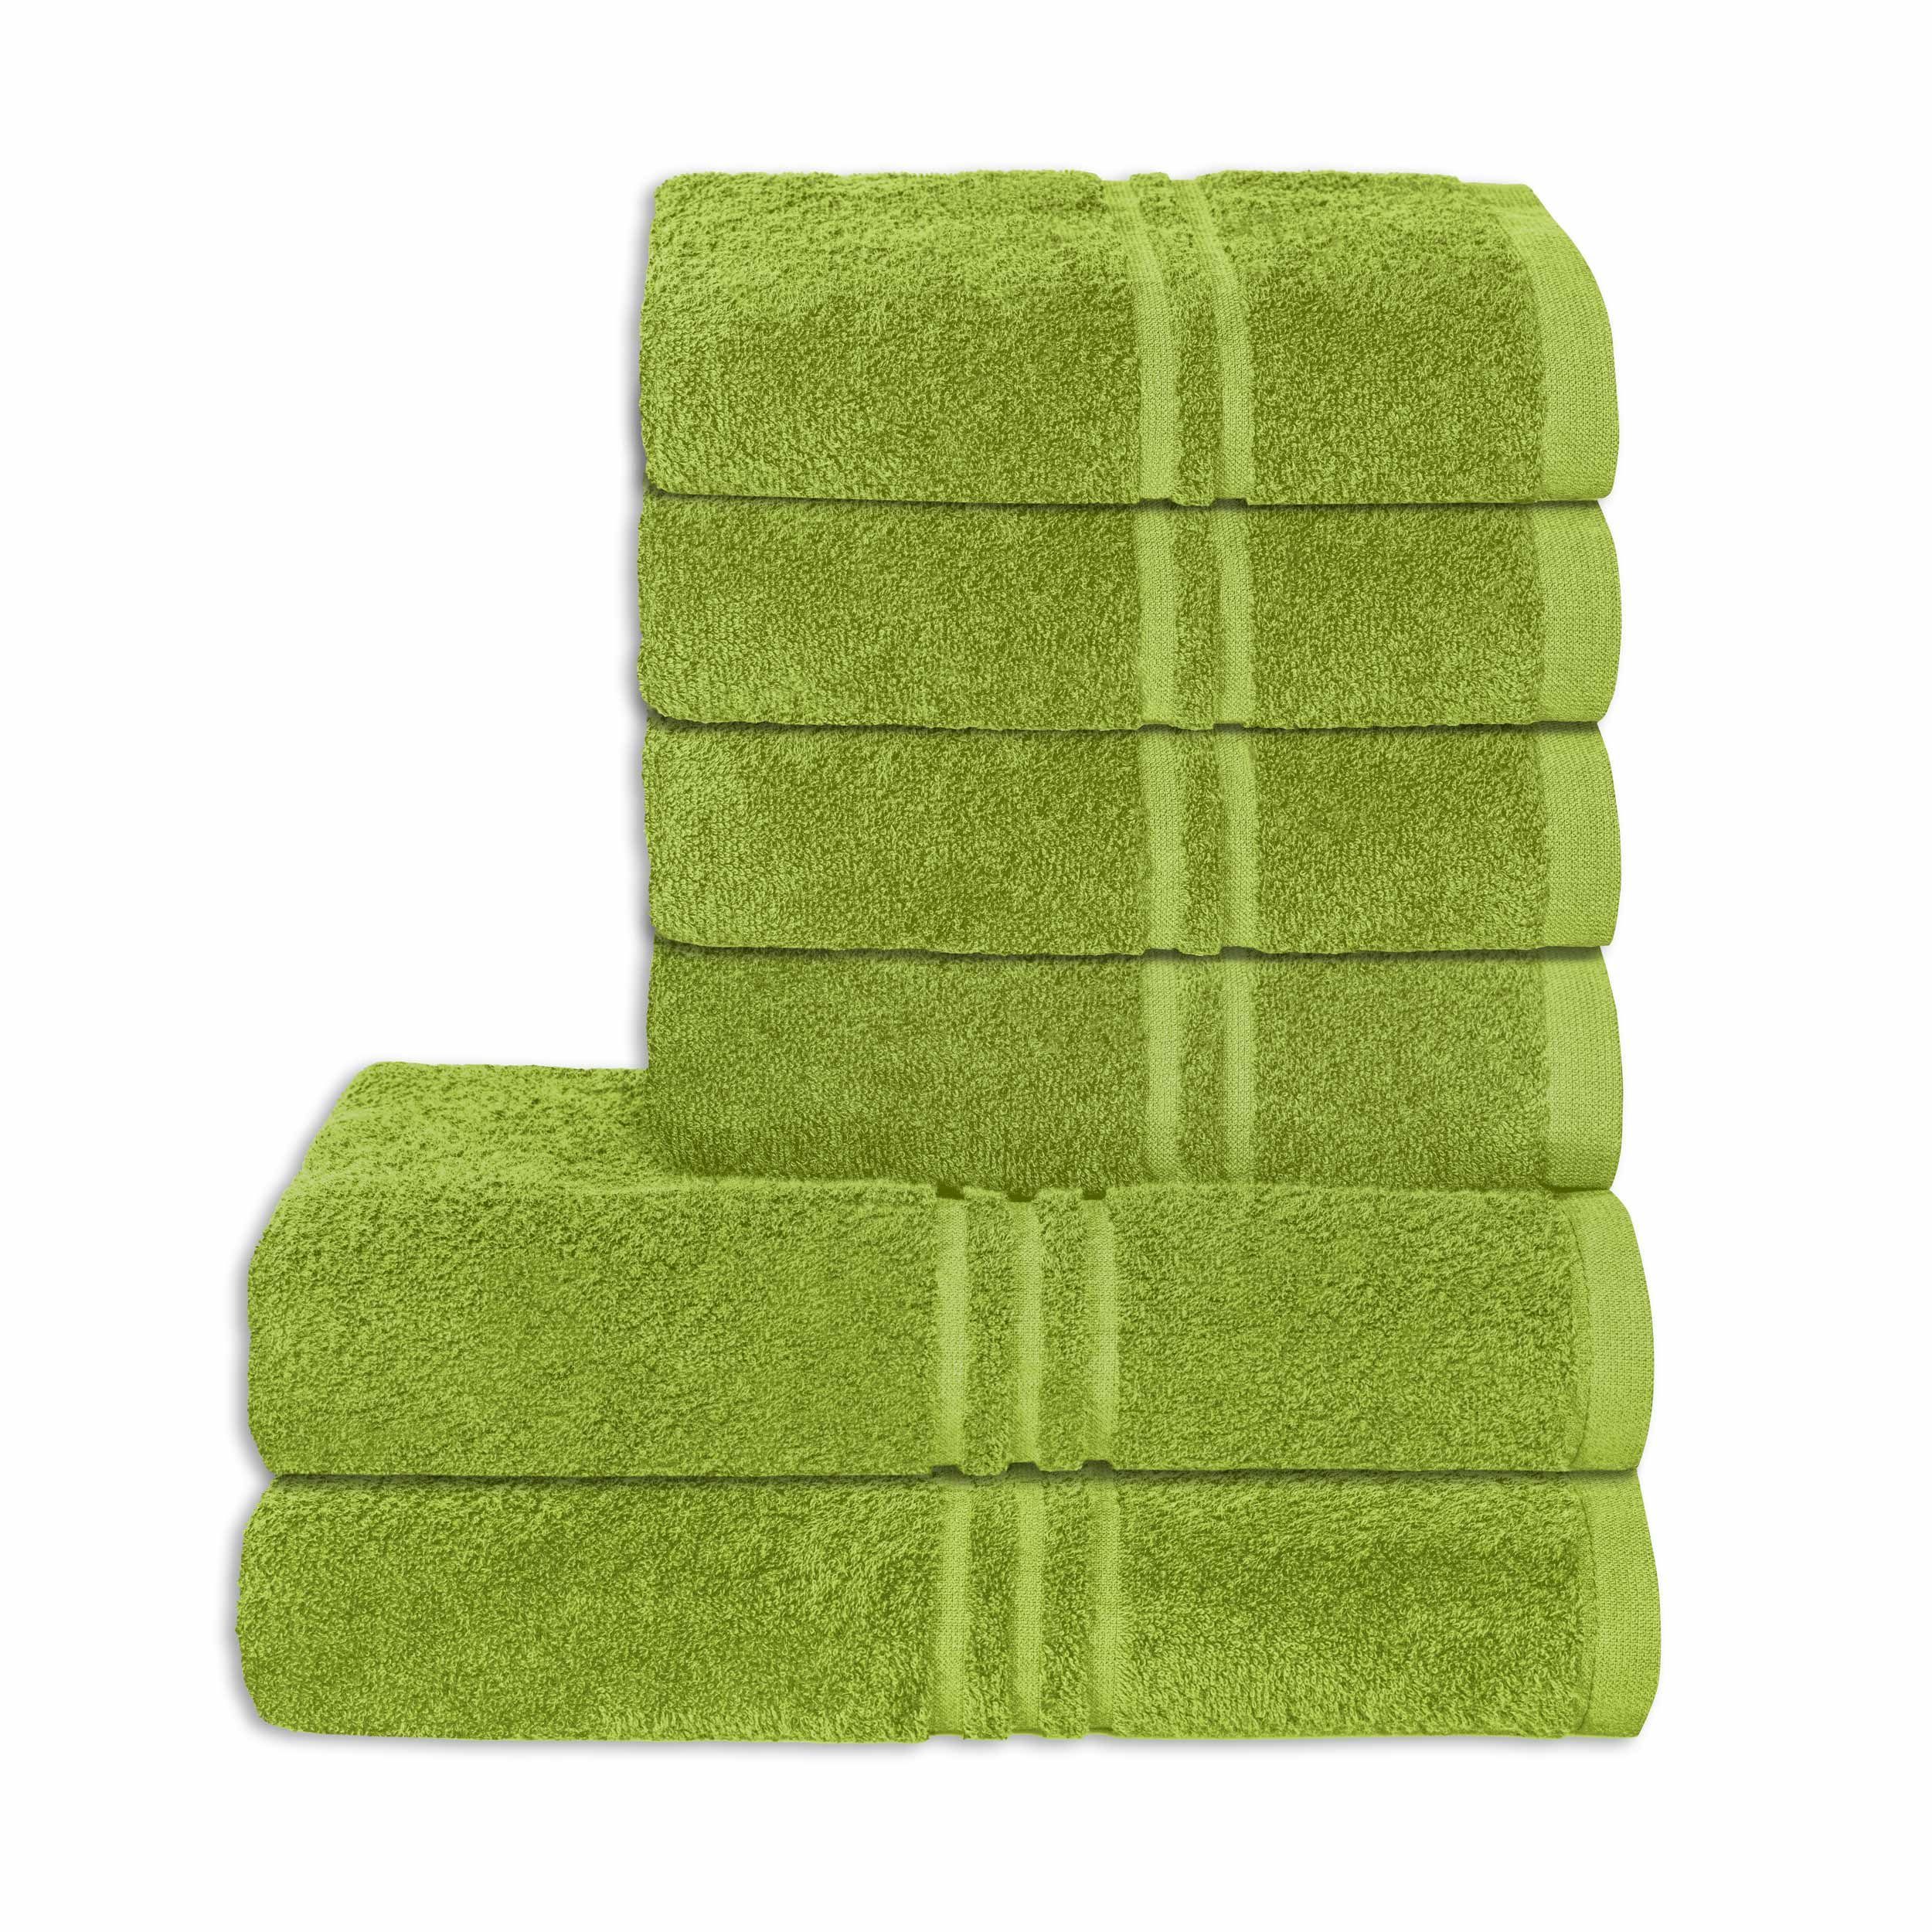 Qualität Baumwolle Rio Set Handtuch aurora grün 6-teilig Premium Badetücher Objektwäsche 100%